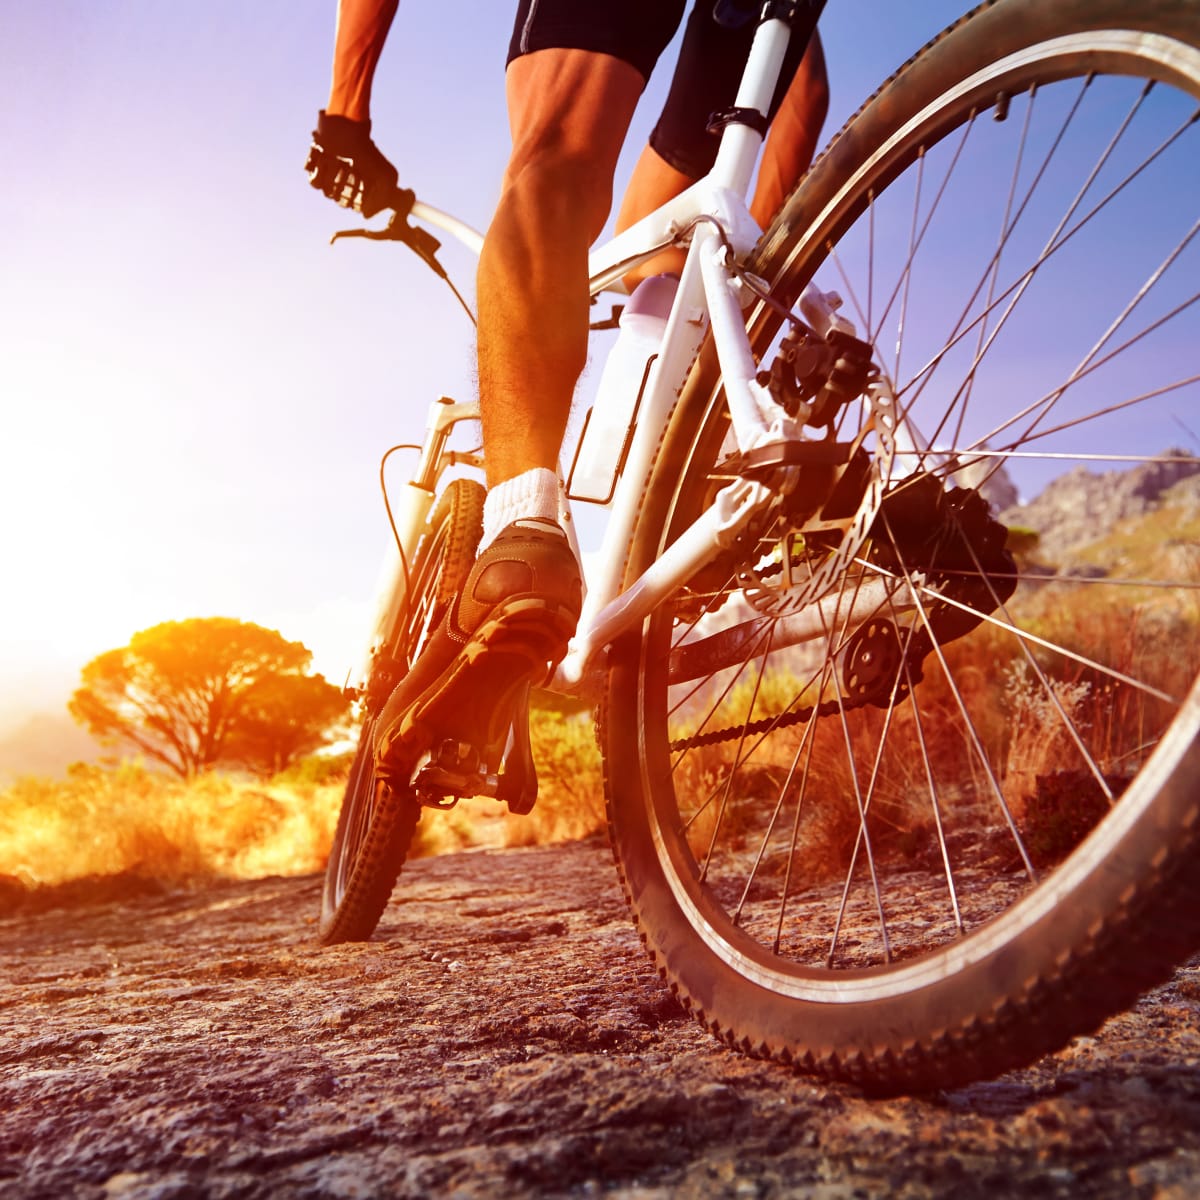 Vlak Aan de overkant De volgende 11 Excellent Affordable Mountain Bikes To Suit Your Budget - Men's Journal